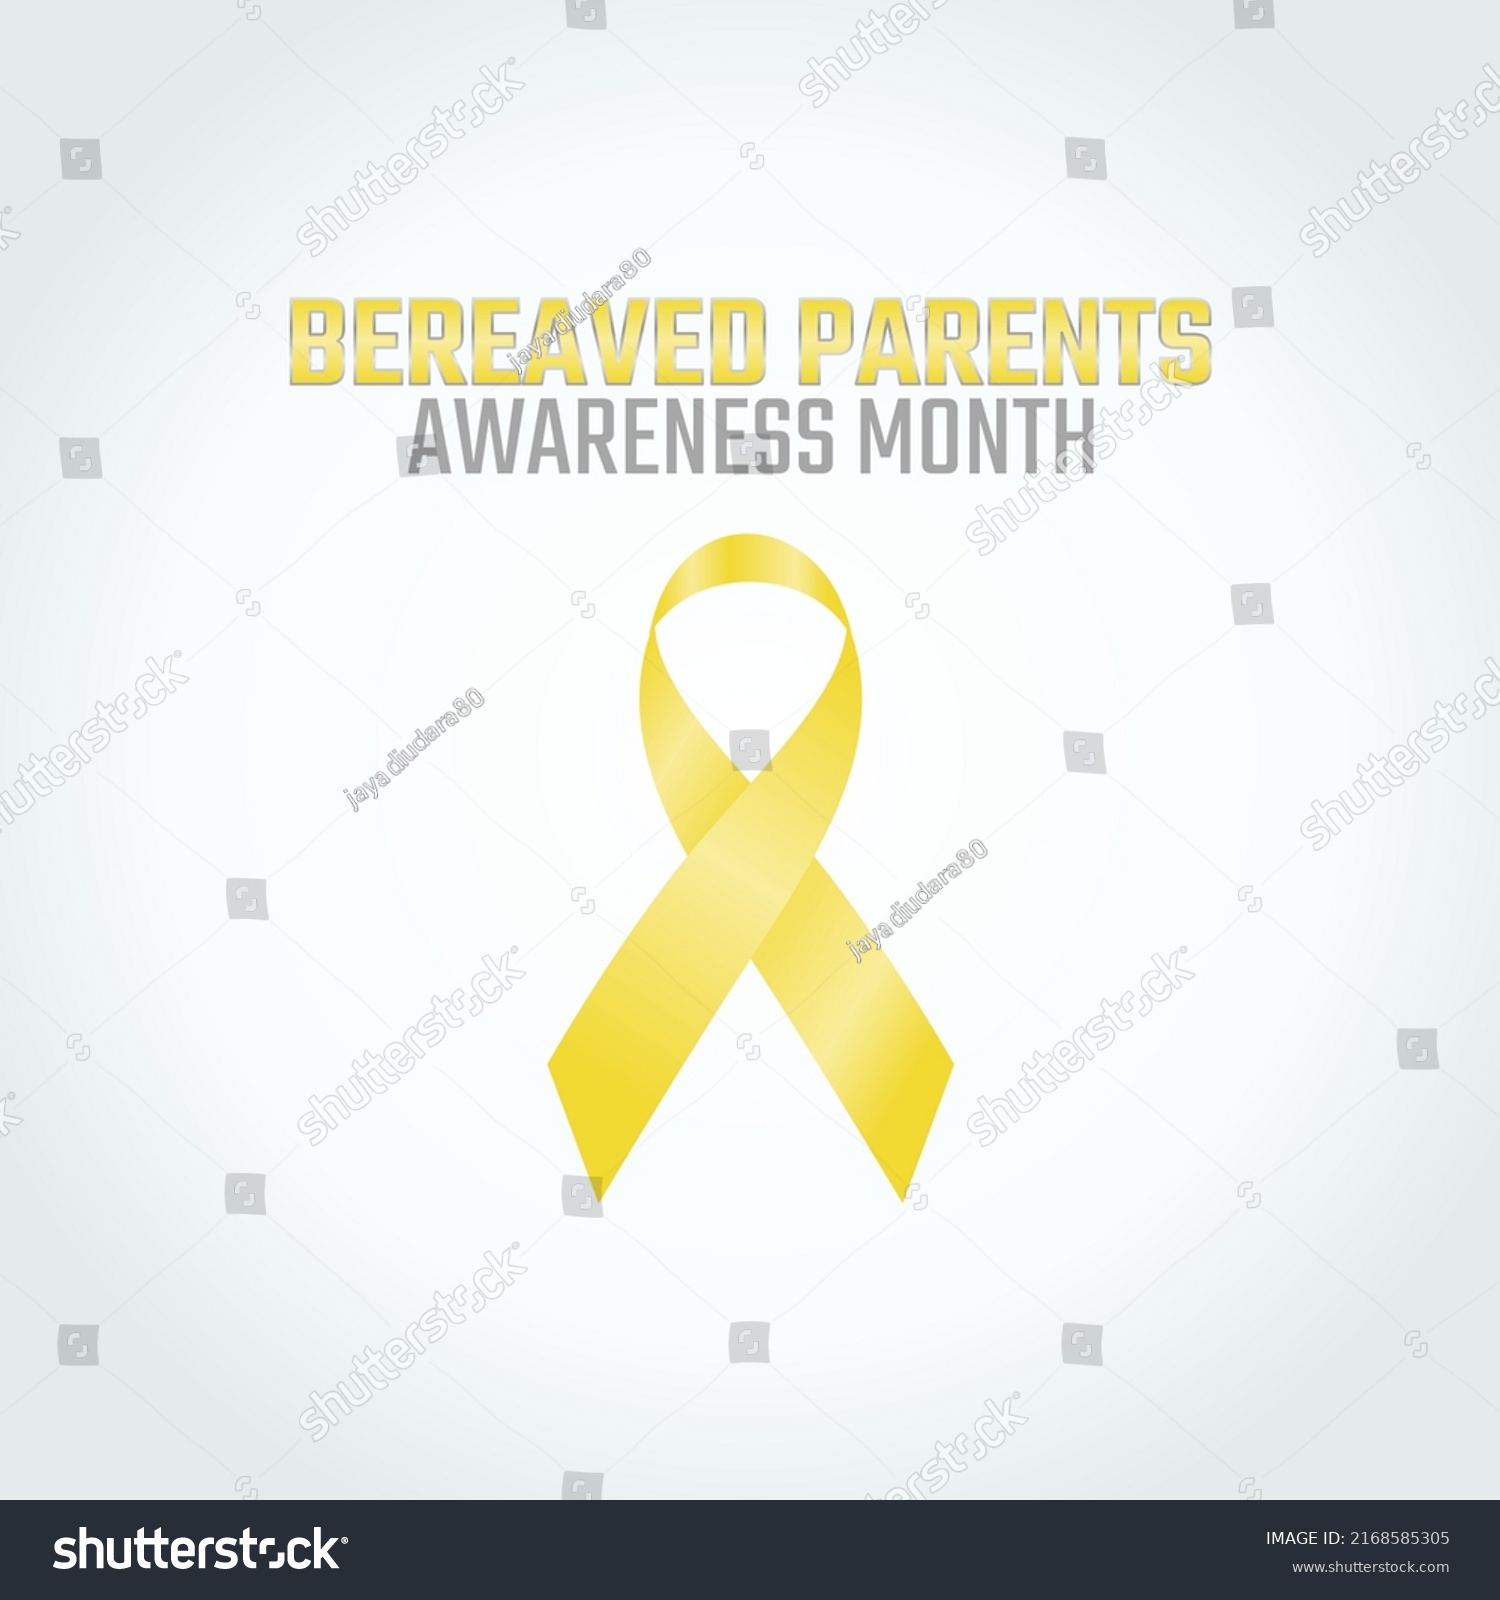 SVG of vector graphic of bereaved parents awareness month good for bereaved parents awareness month celebration. flat design. flyer design.flat illustration. svg